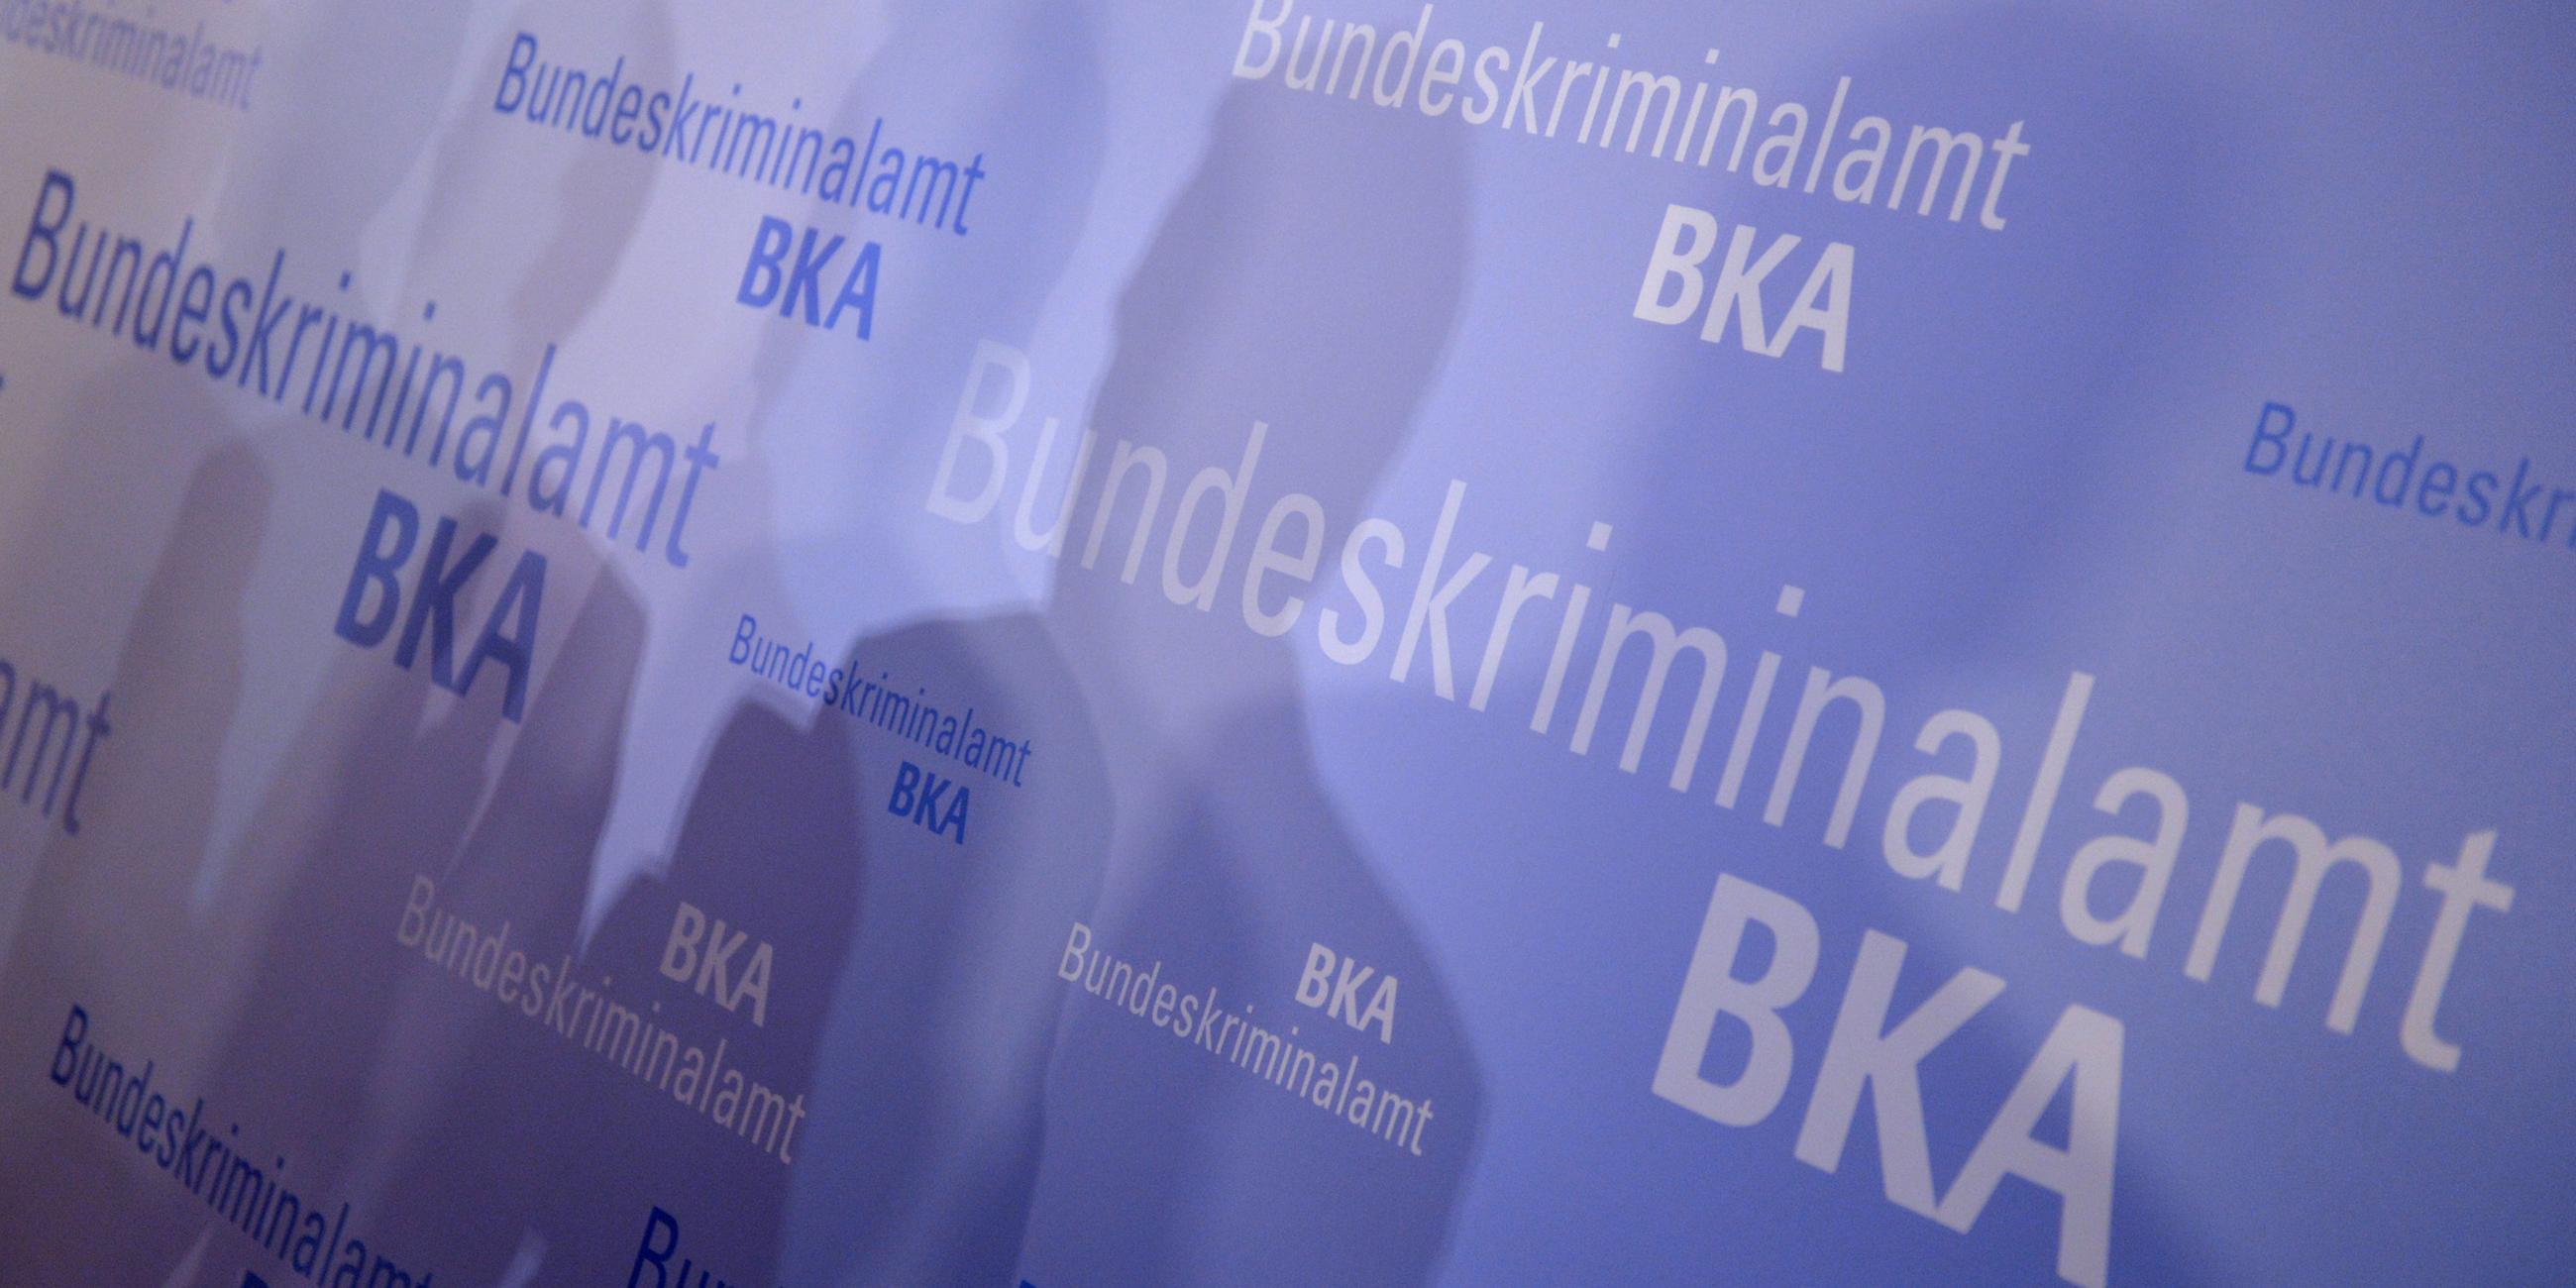 Archiv: Schatten fallen am 12.11.2013 am Rande der BKA-Herbsttagung in Wiesbaden (Hessen) auf einen Aufsteller des Bundeskriminalamts (BKA). 